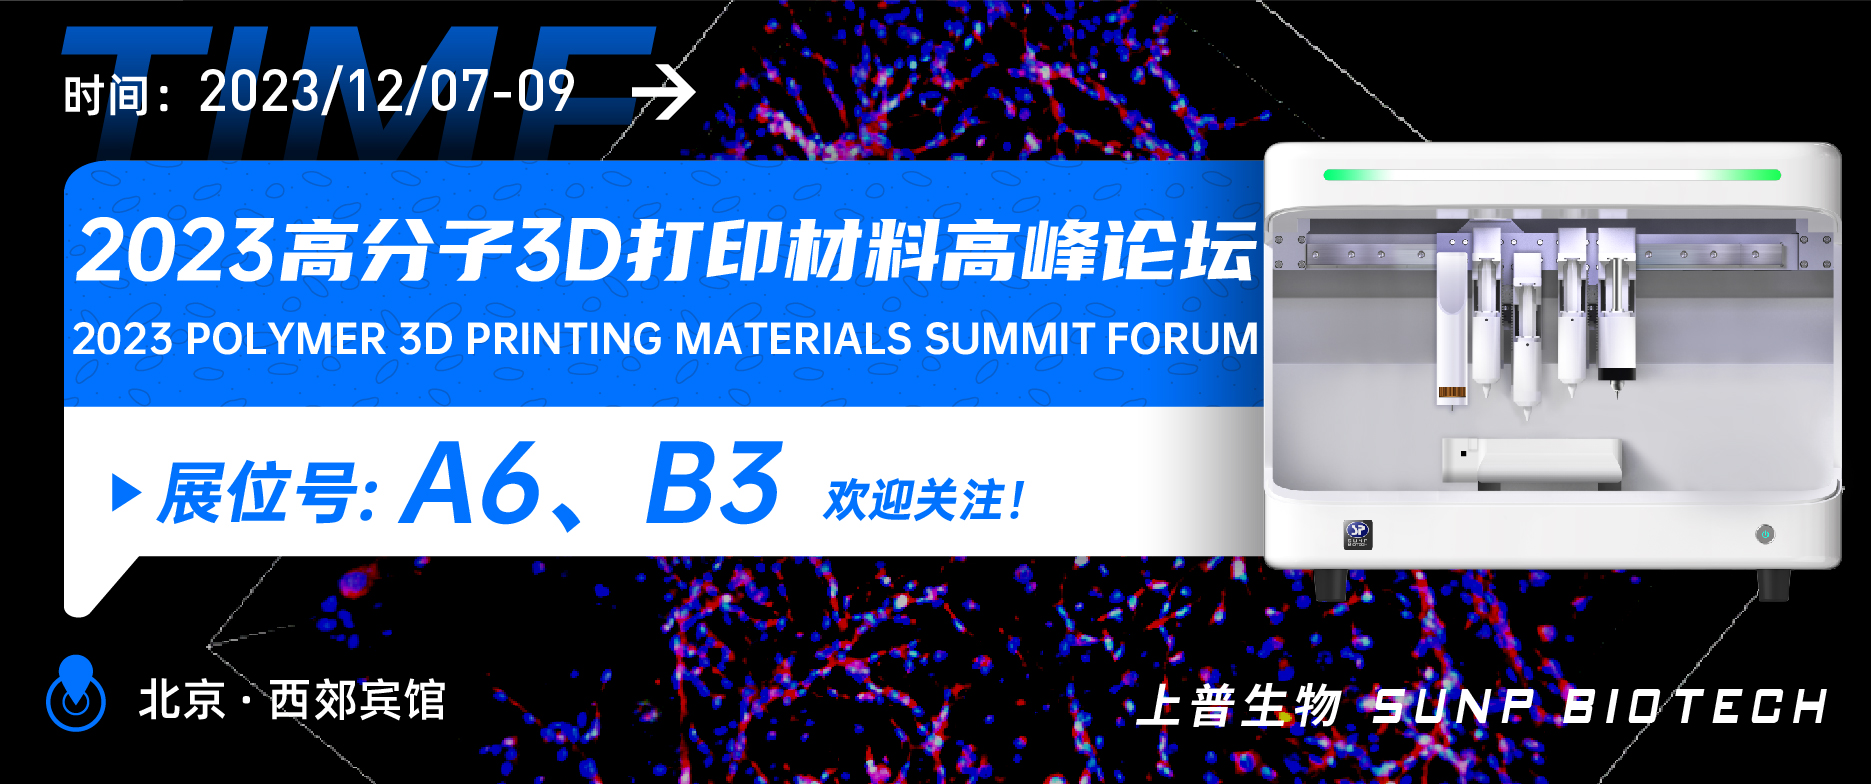 展会预告︱12月7-9日 上普生物受邀参加2023高分子3D打印材料高峰论坛邀您相聚北京！